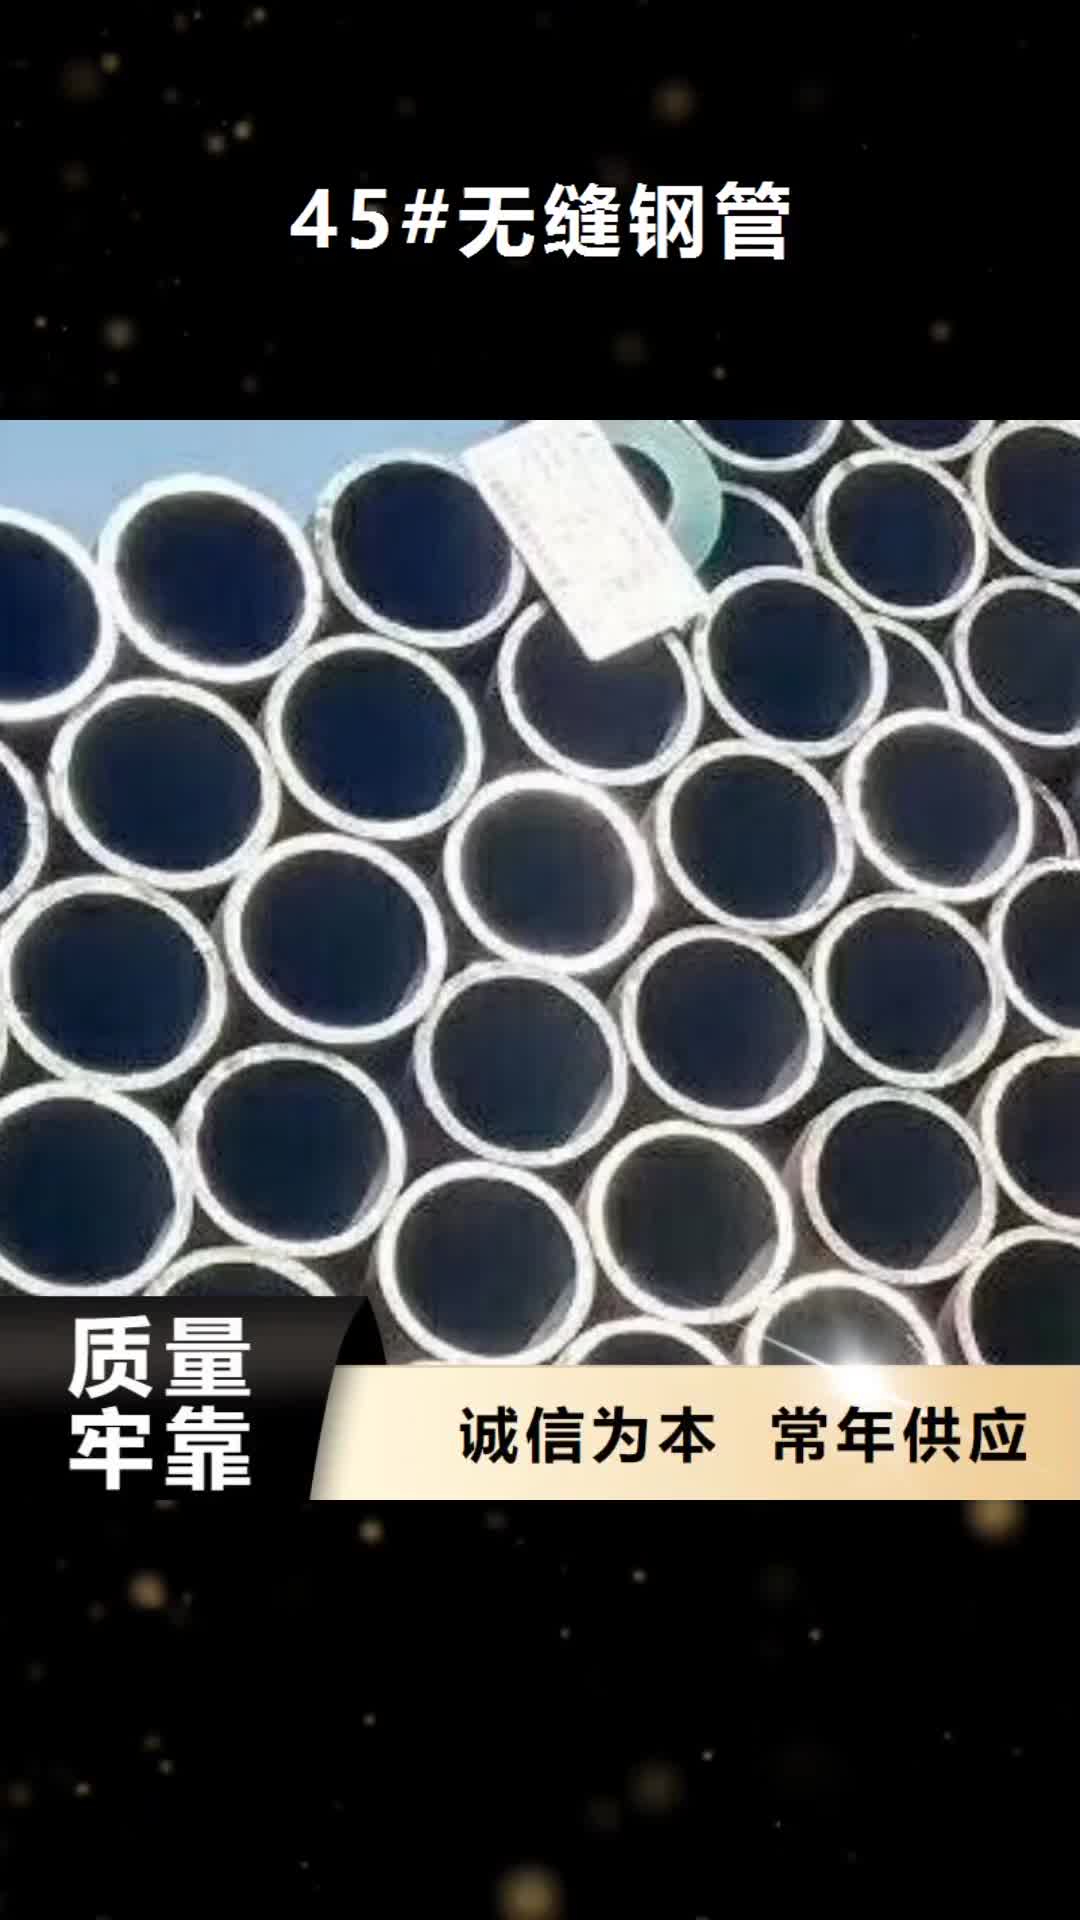 朝阳【45#无缝钢管】焊管拒绝伪劣产品